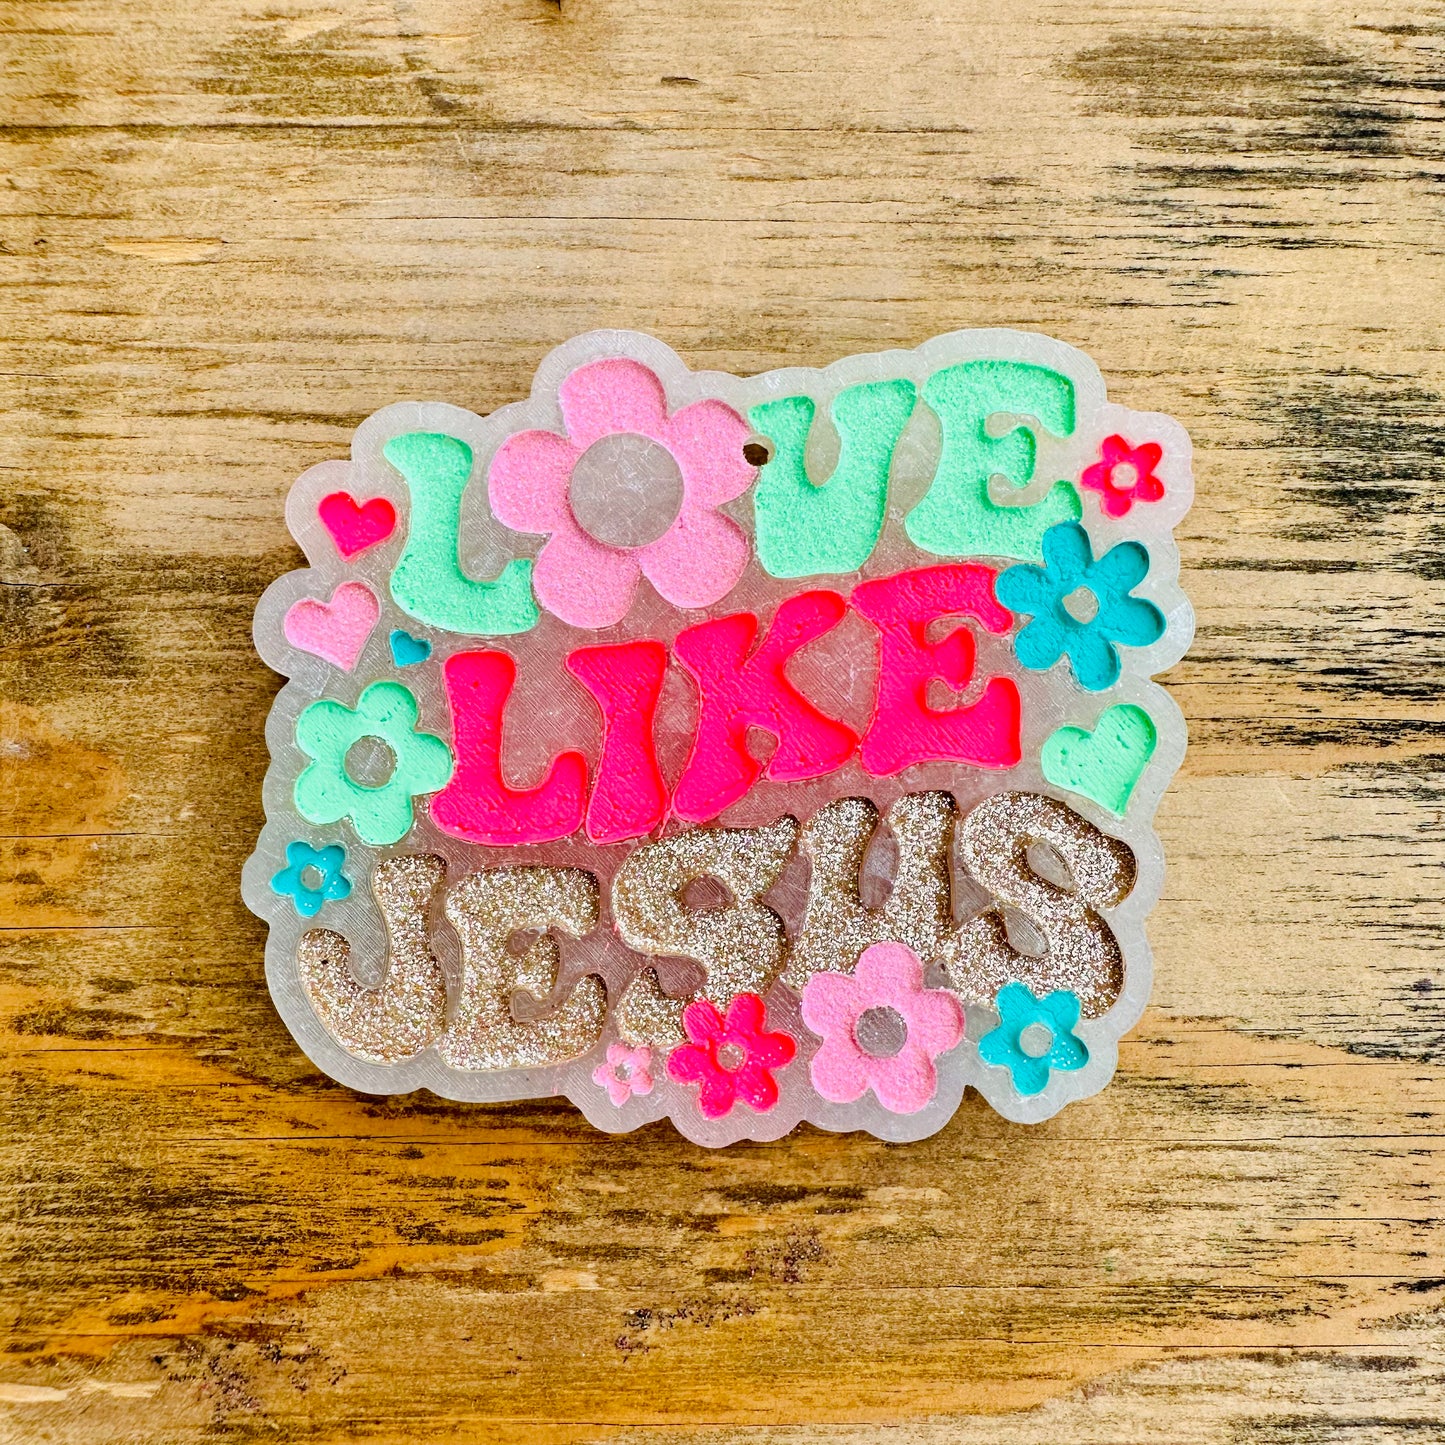 “Love Like Jesus” Car Freshie